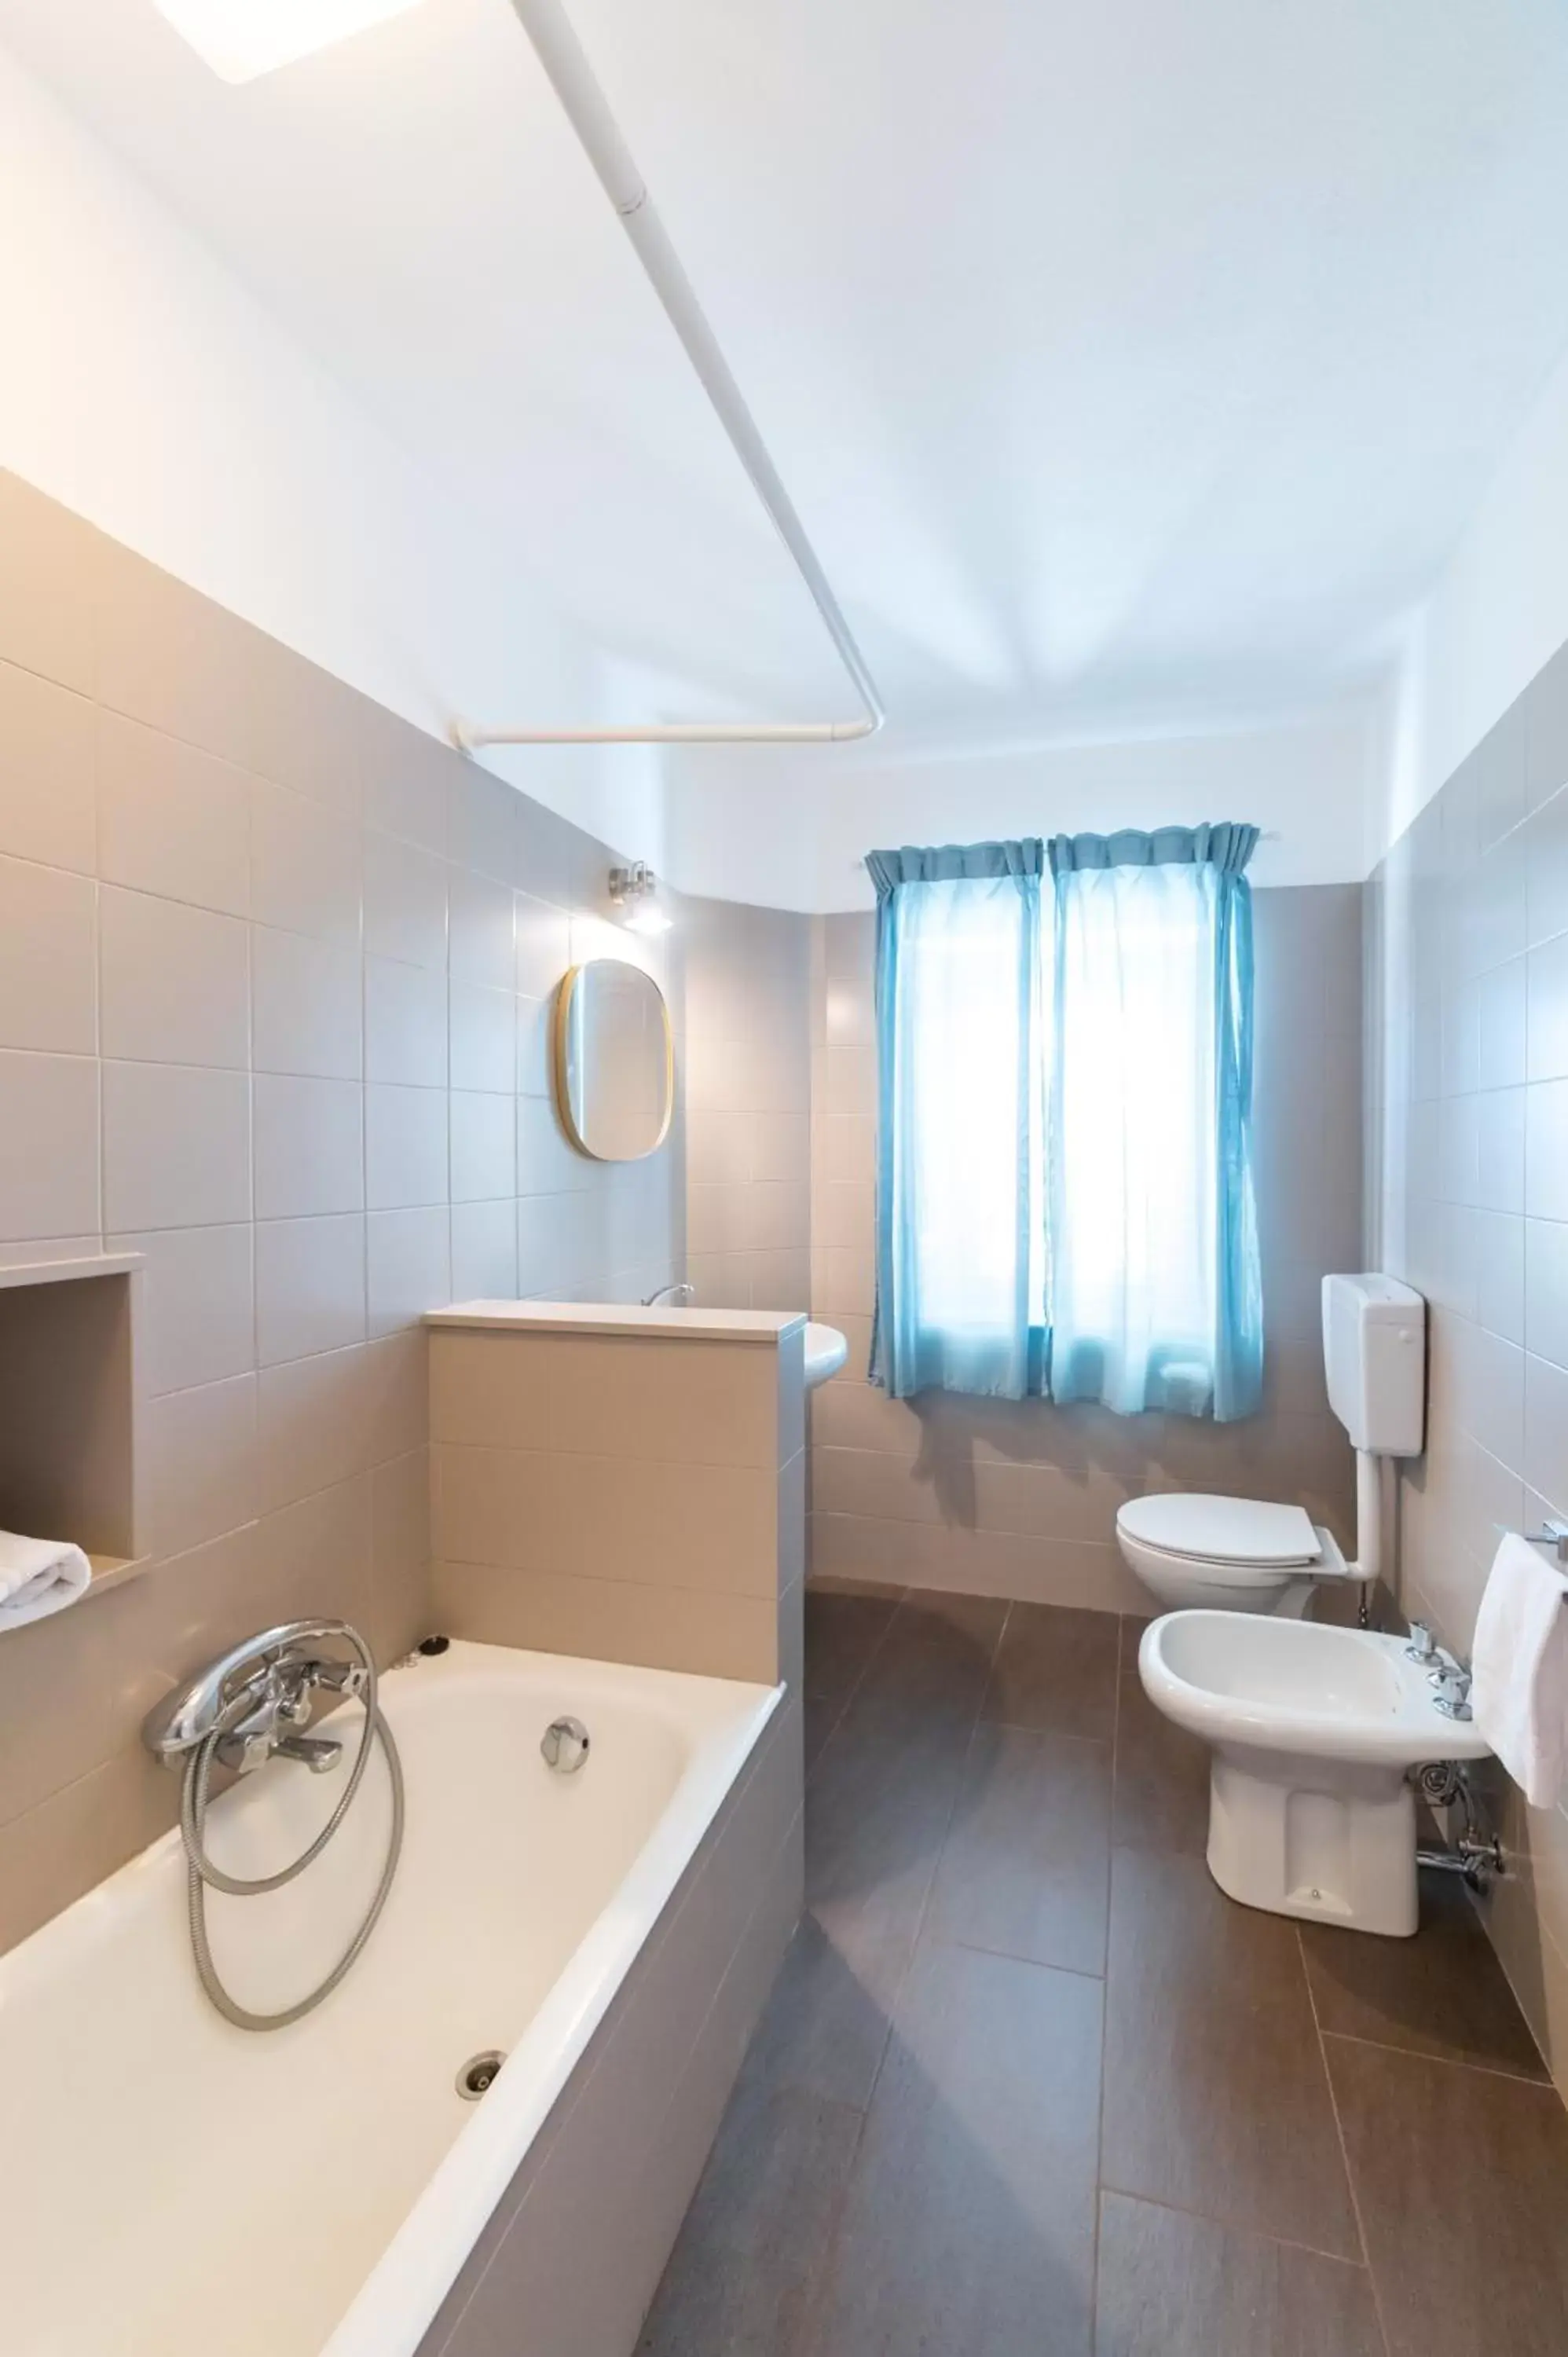 Bathroom in Hotel Villino Gallodoro